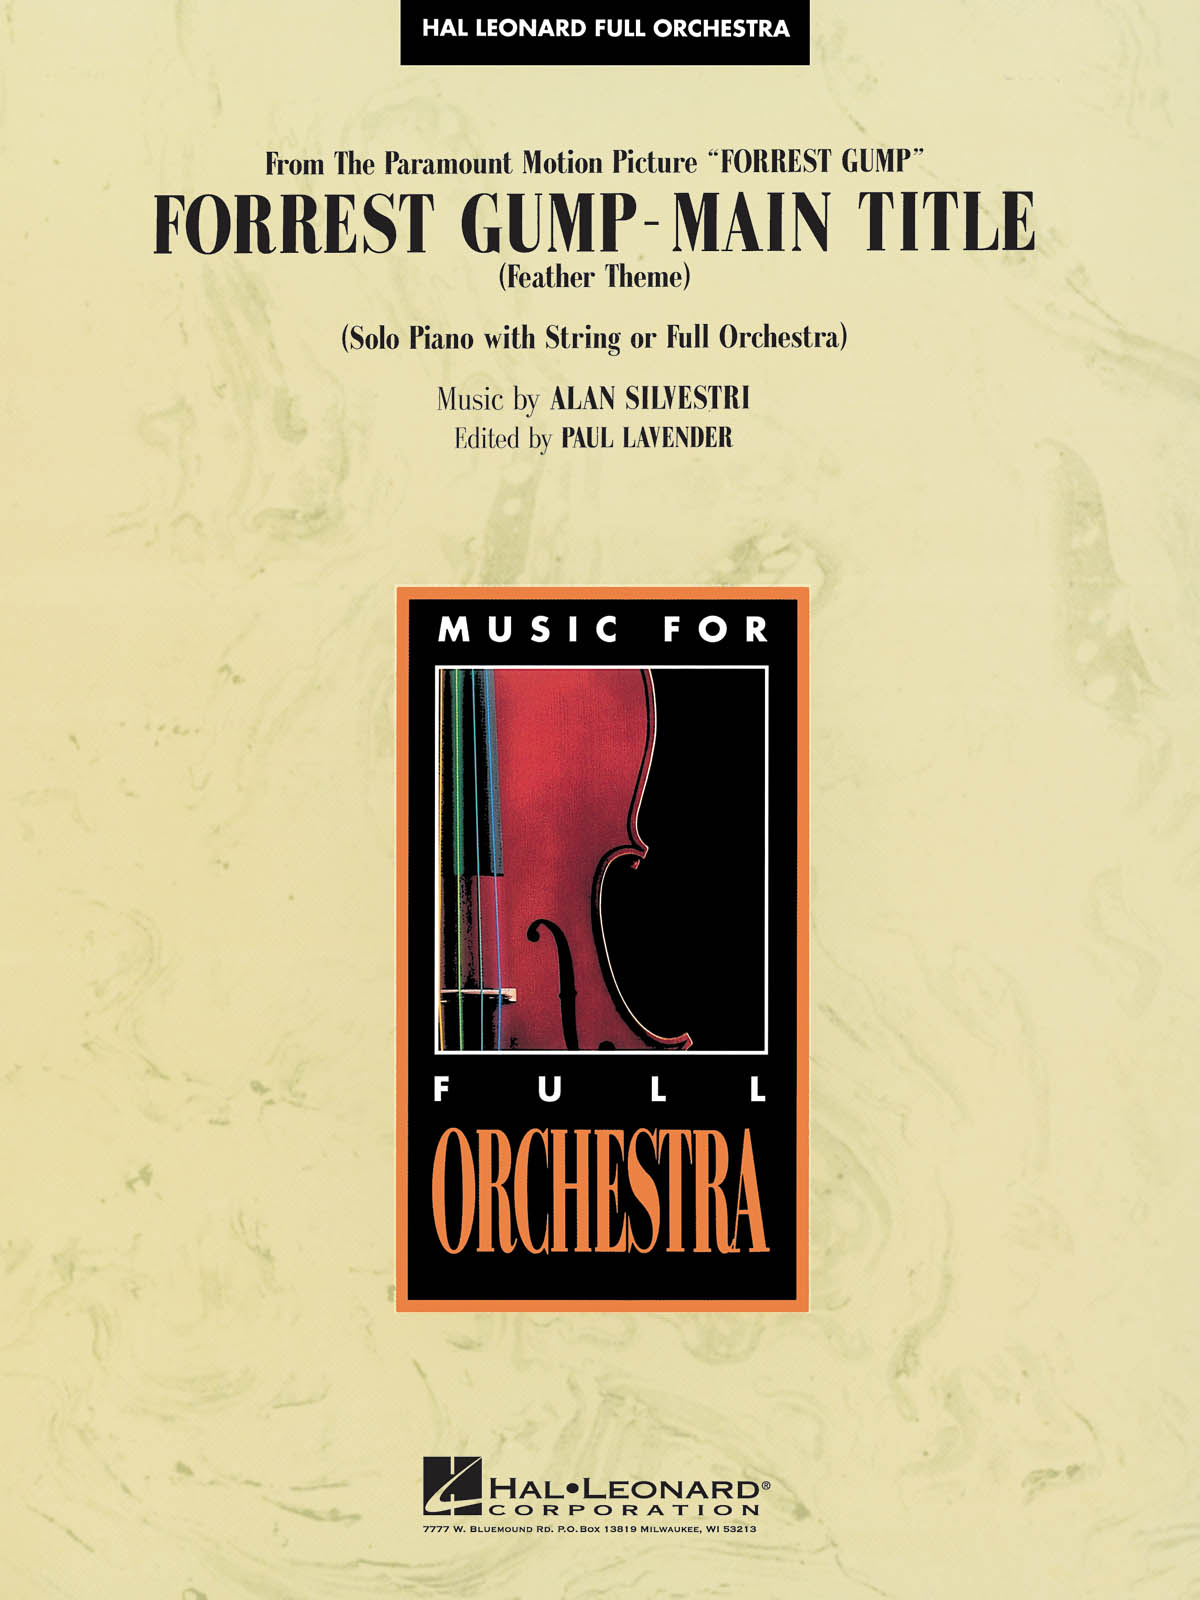 Forrest Gump Suite - Main Theme: Orchestra: Score